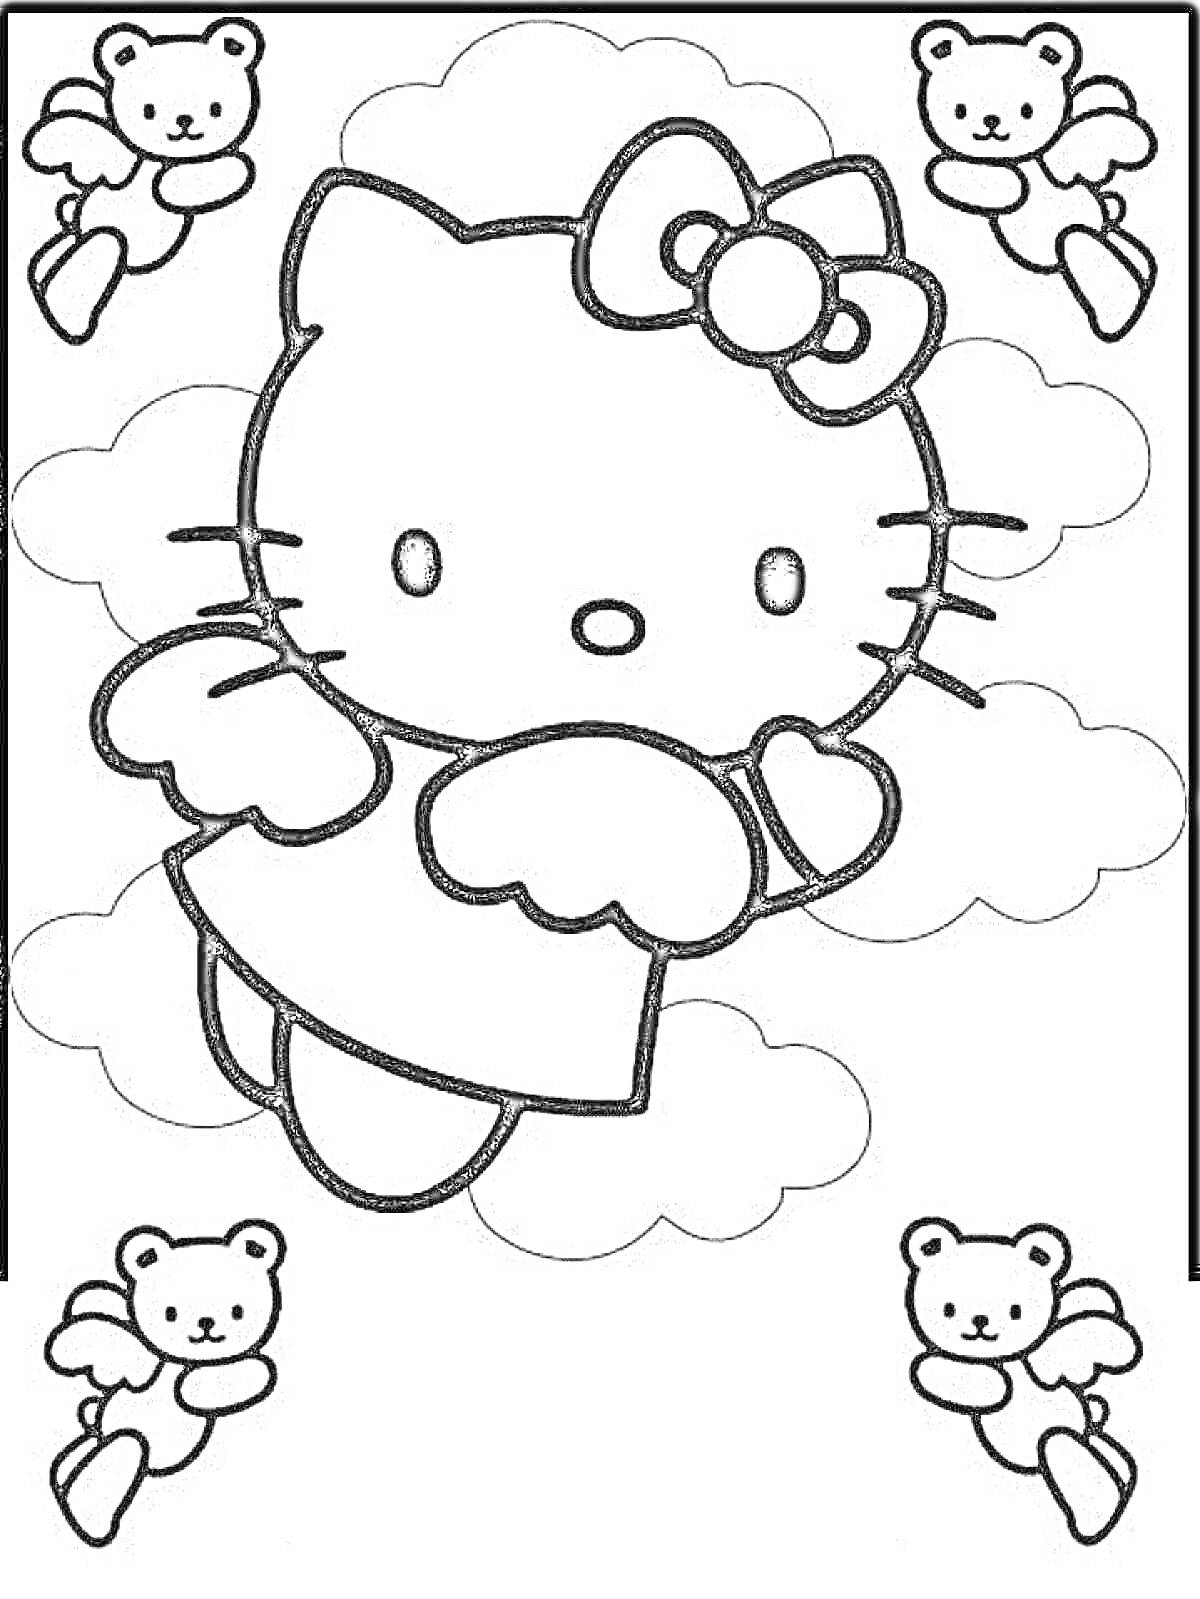 Раскраска Хелло Китти с ангельскими крыльями в облаках и четверо плюшевых медвежат с крыльями на заднем плане